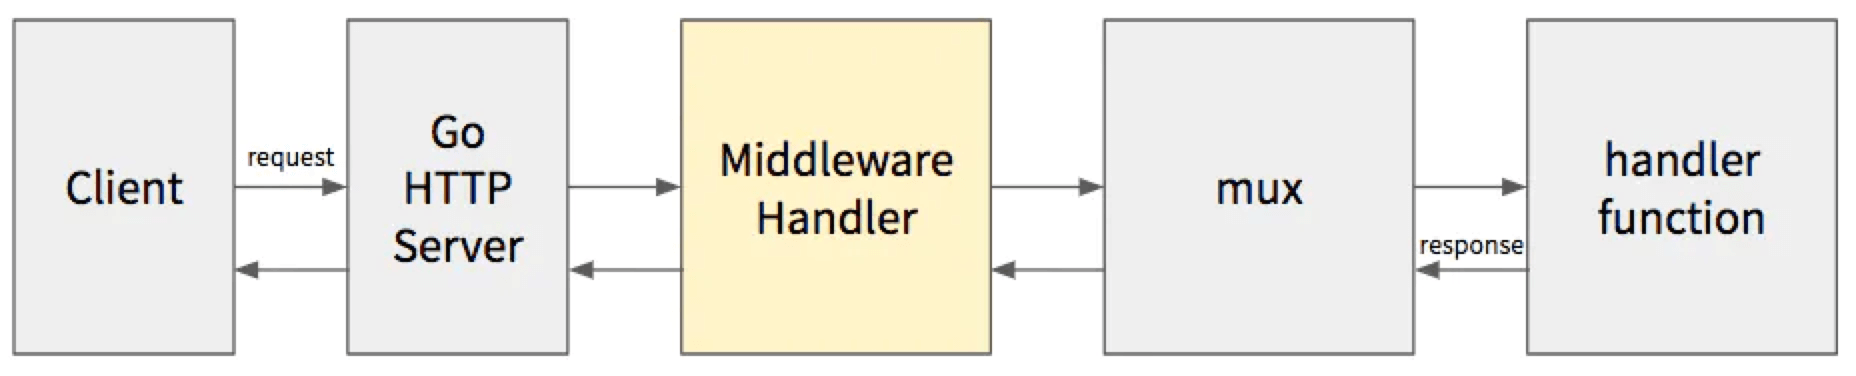 go_middleware_handlers